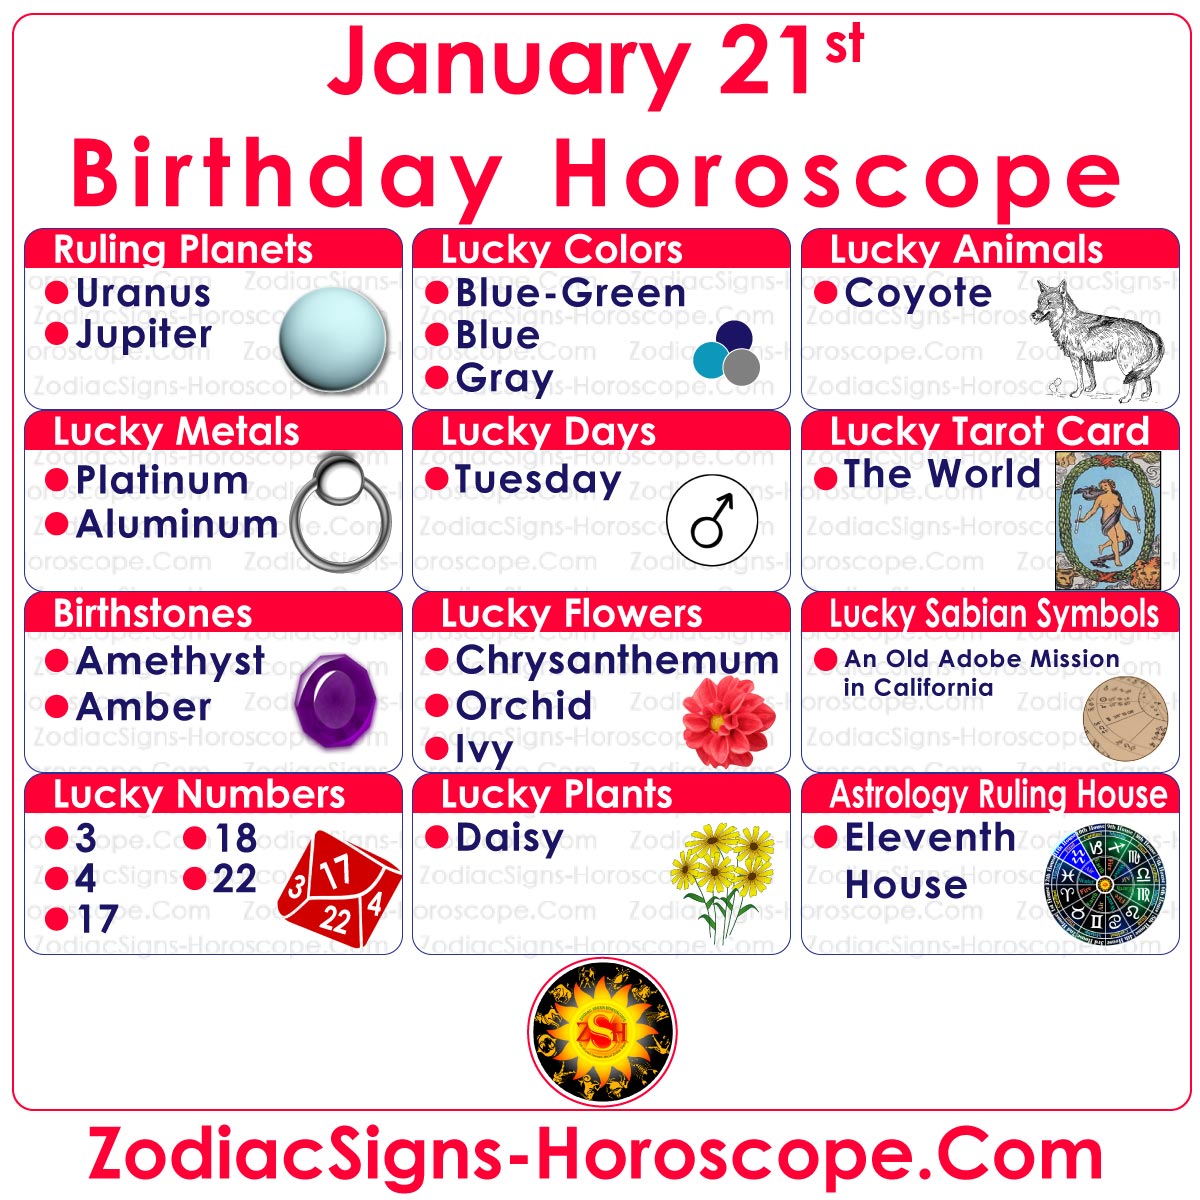 Nombres, jours, couleurs chanceux du zodiaque du 21 janvier